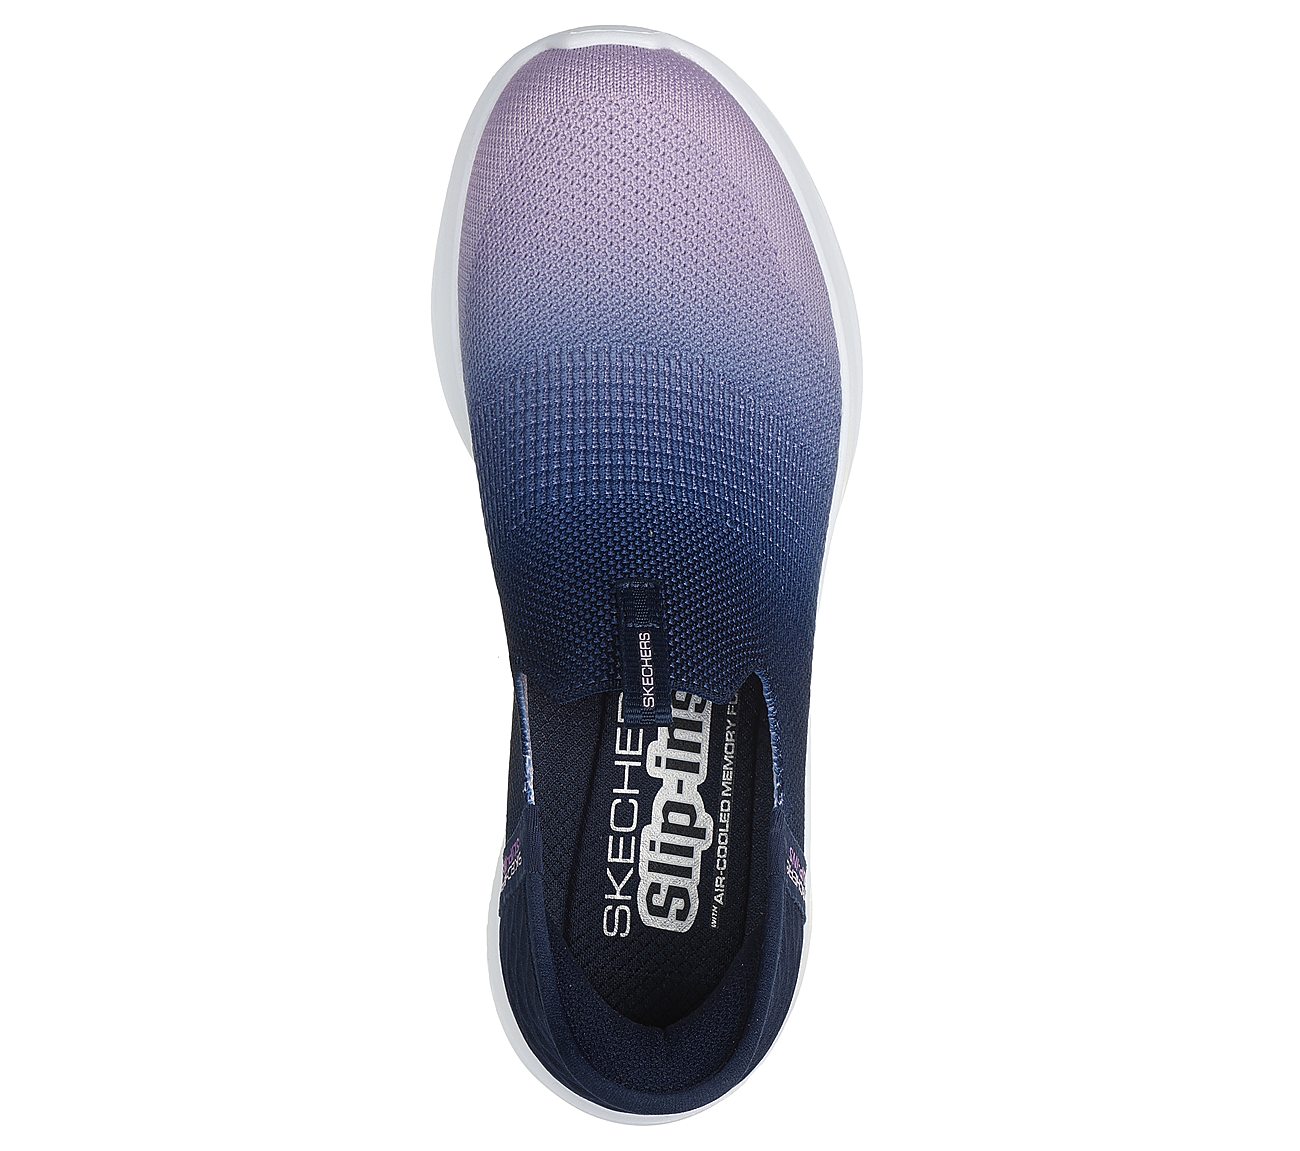 SKECHERS SLIP-INS: ULTRA FLEX 3.0 - BEAUTY BLEND, NAVY Footwear Top View